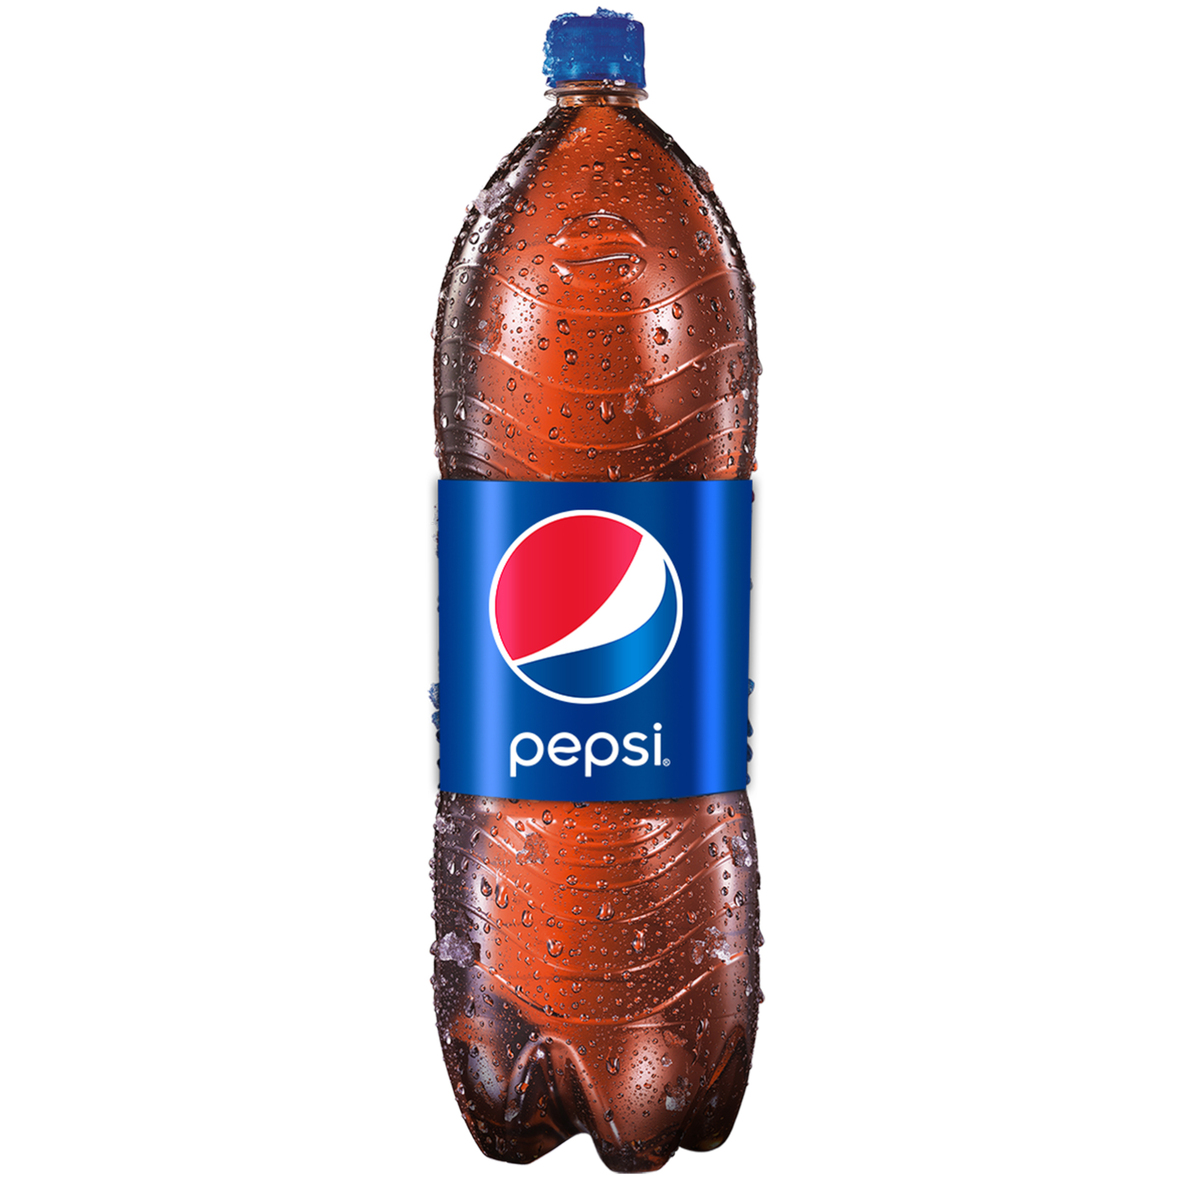 اشتري قم بشراء بيبسي مشروب غازي 1 لتر Online at Best Price من الموقع - من لولو هايبر ماركت Cola Bottle في السعودية